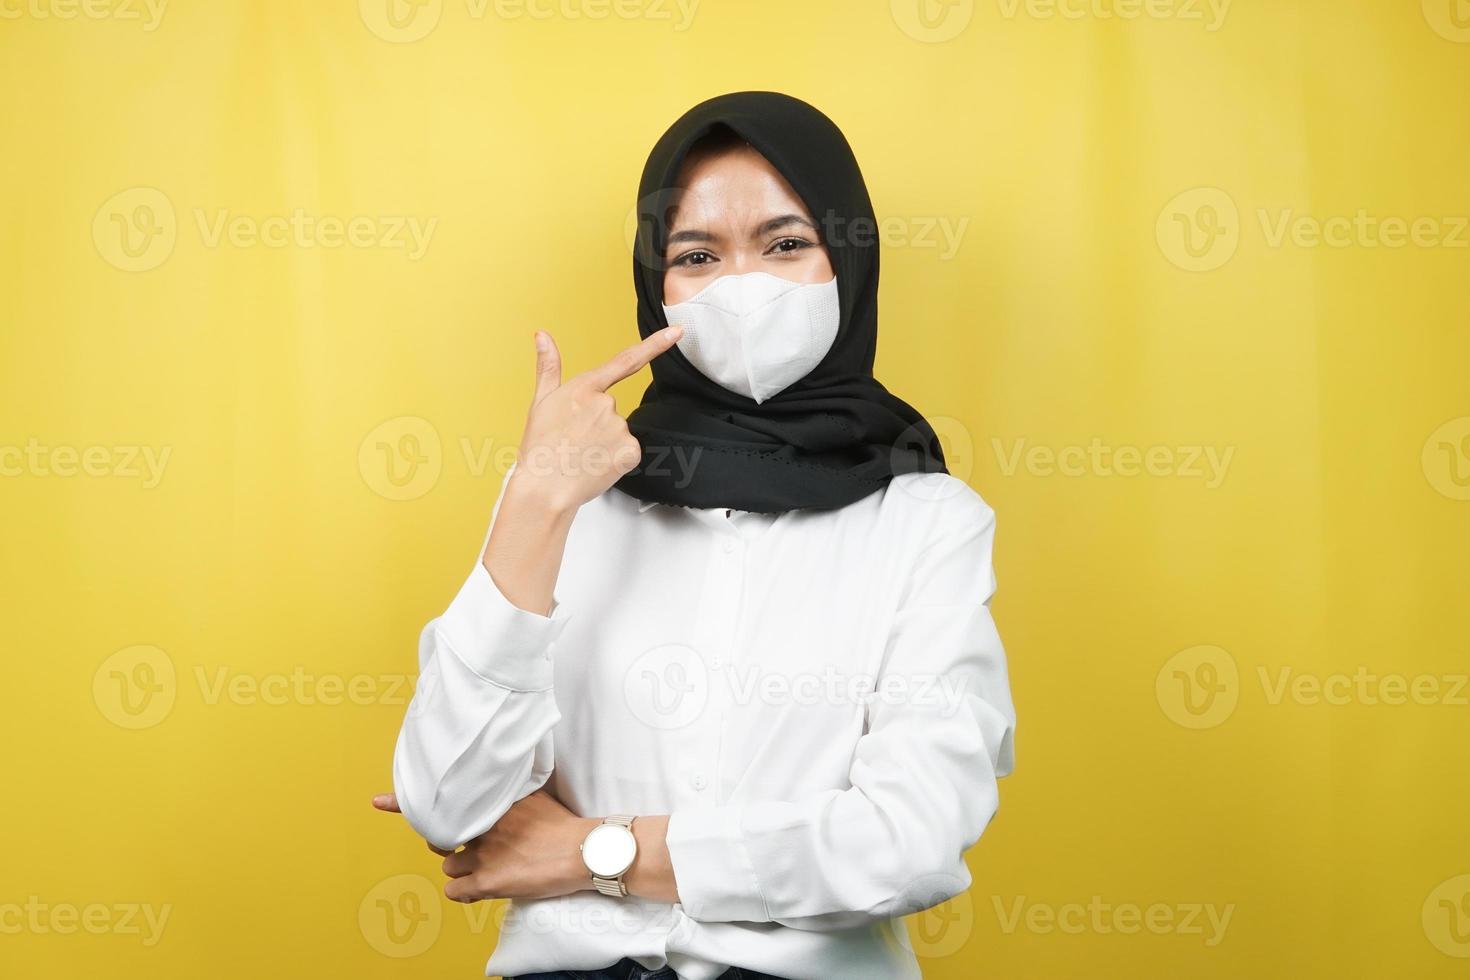 donna musulmana che indossa una maschera bianca, con la mano che punta alla maschera, previene il gesto del virus corona, previene il covid-19, isolato su sfondo giallo foto